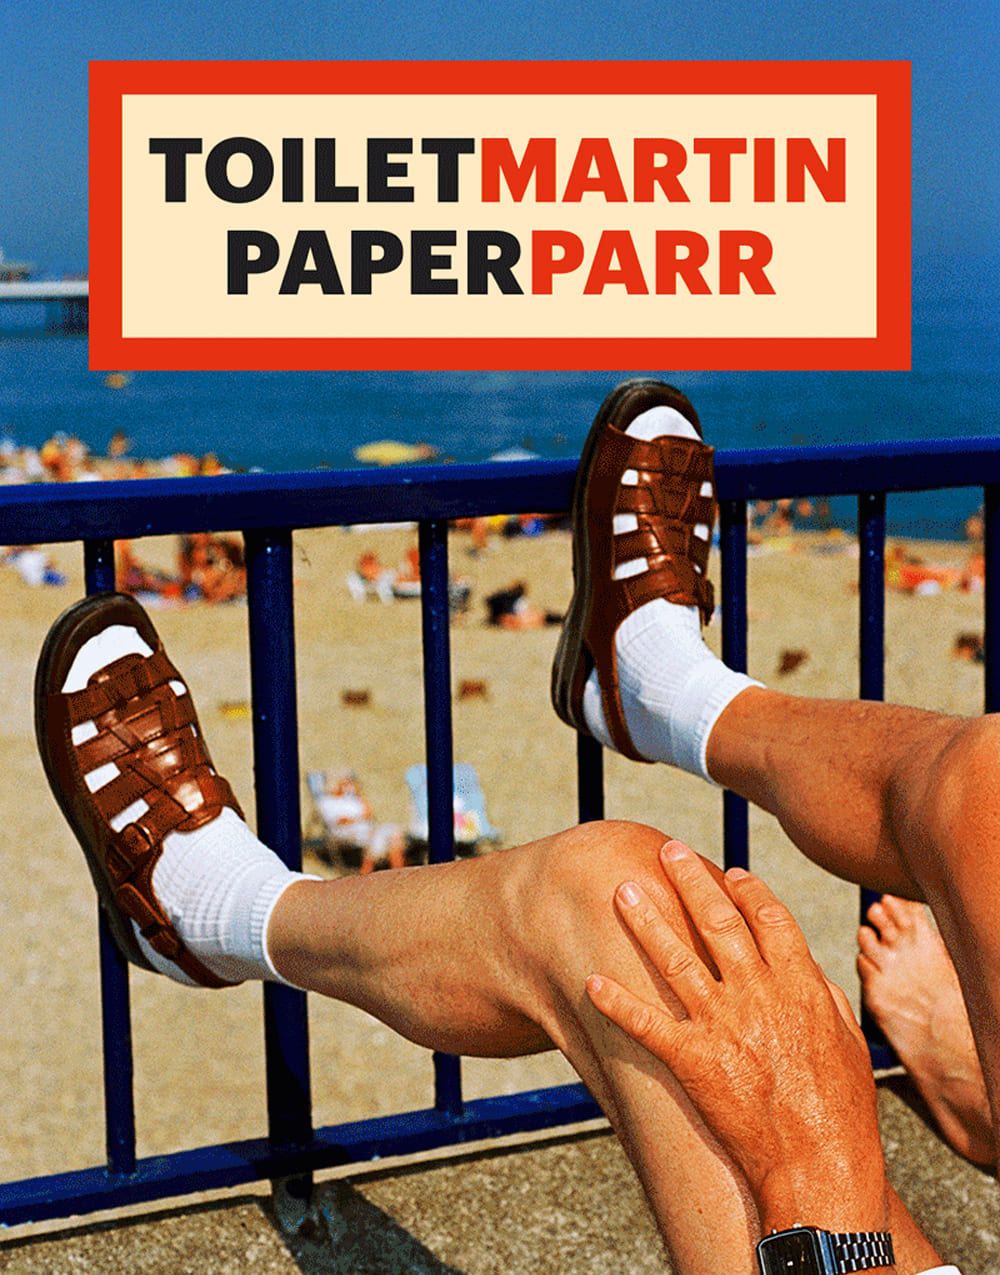 toilet-martin-paper-parr